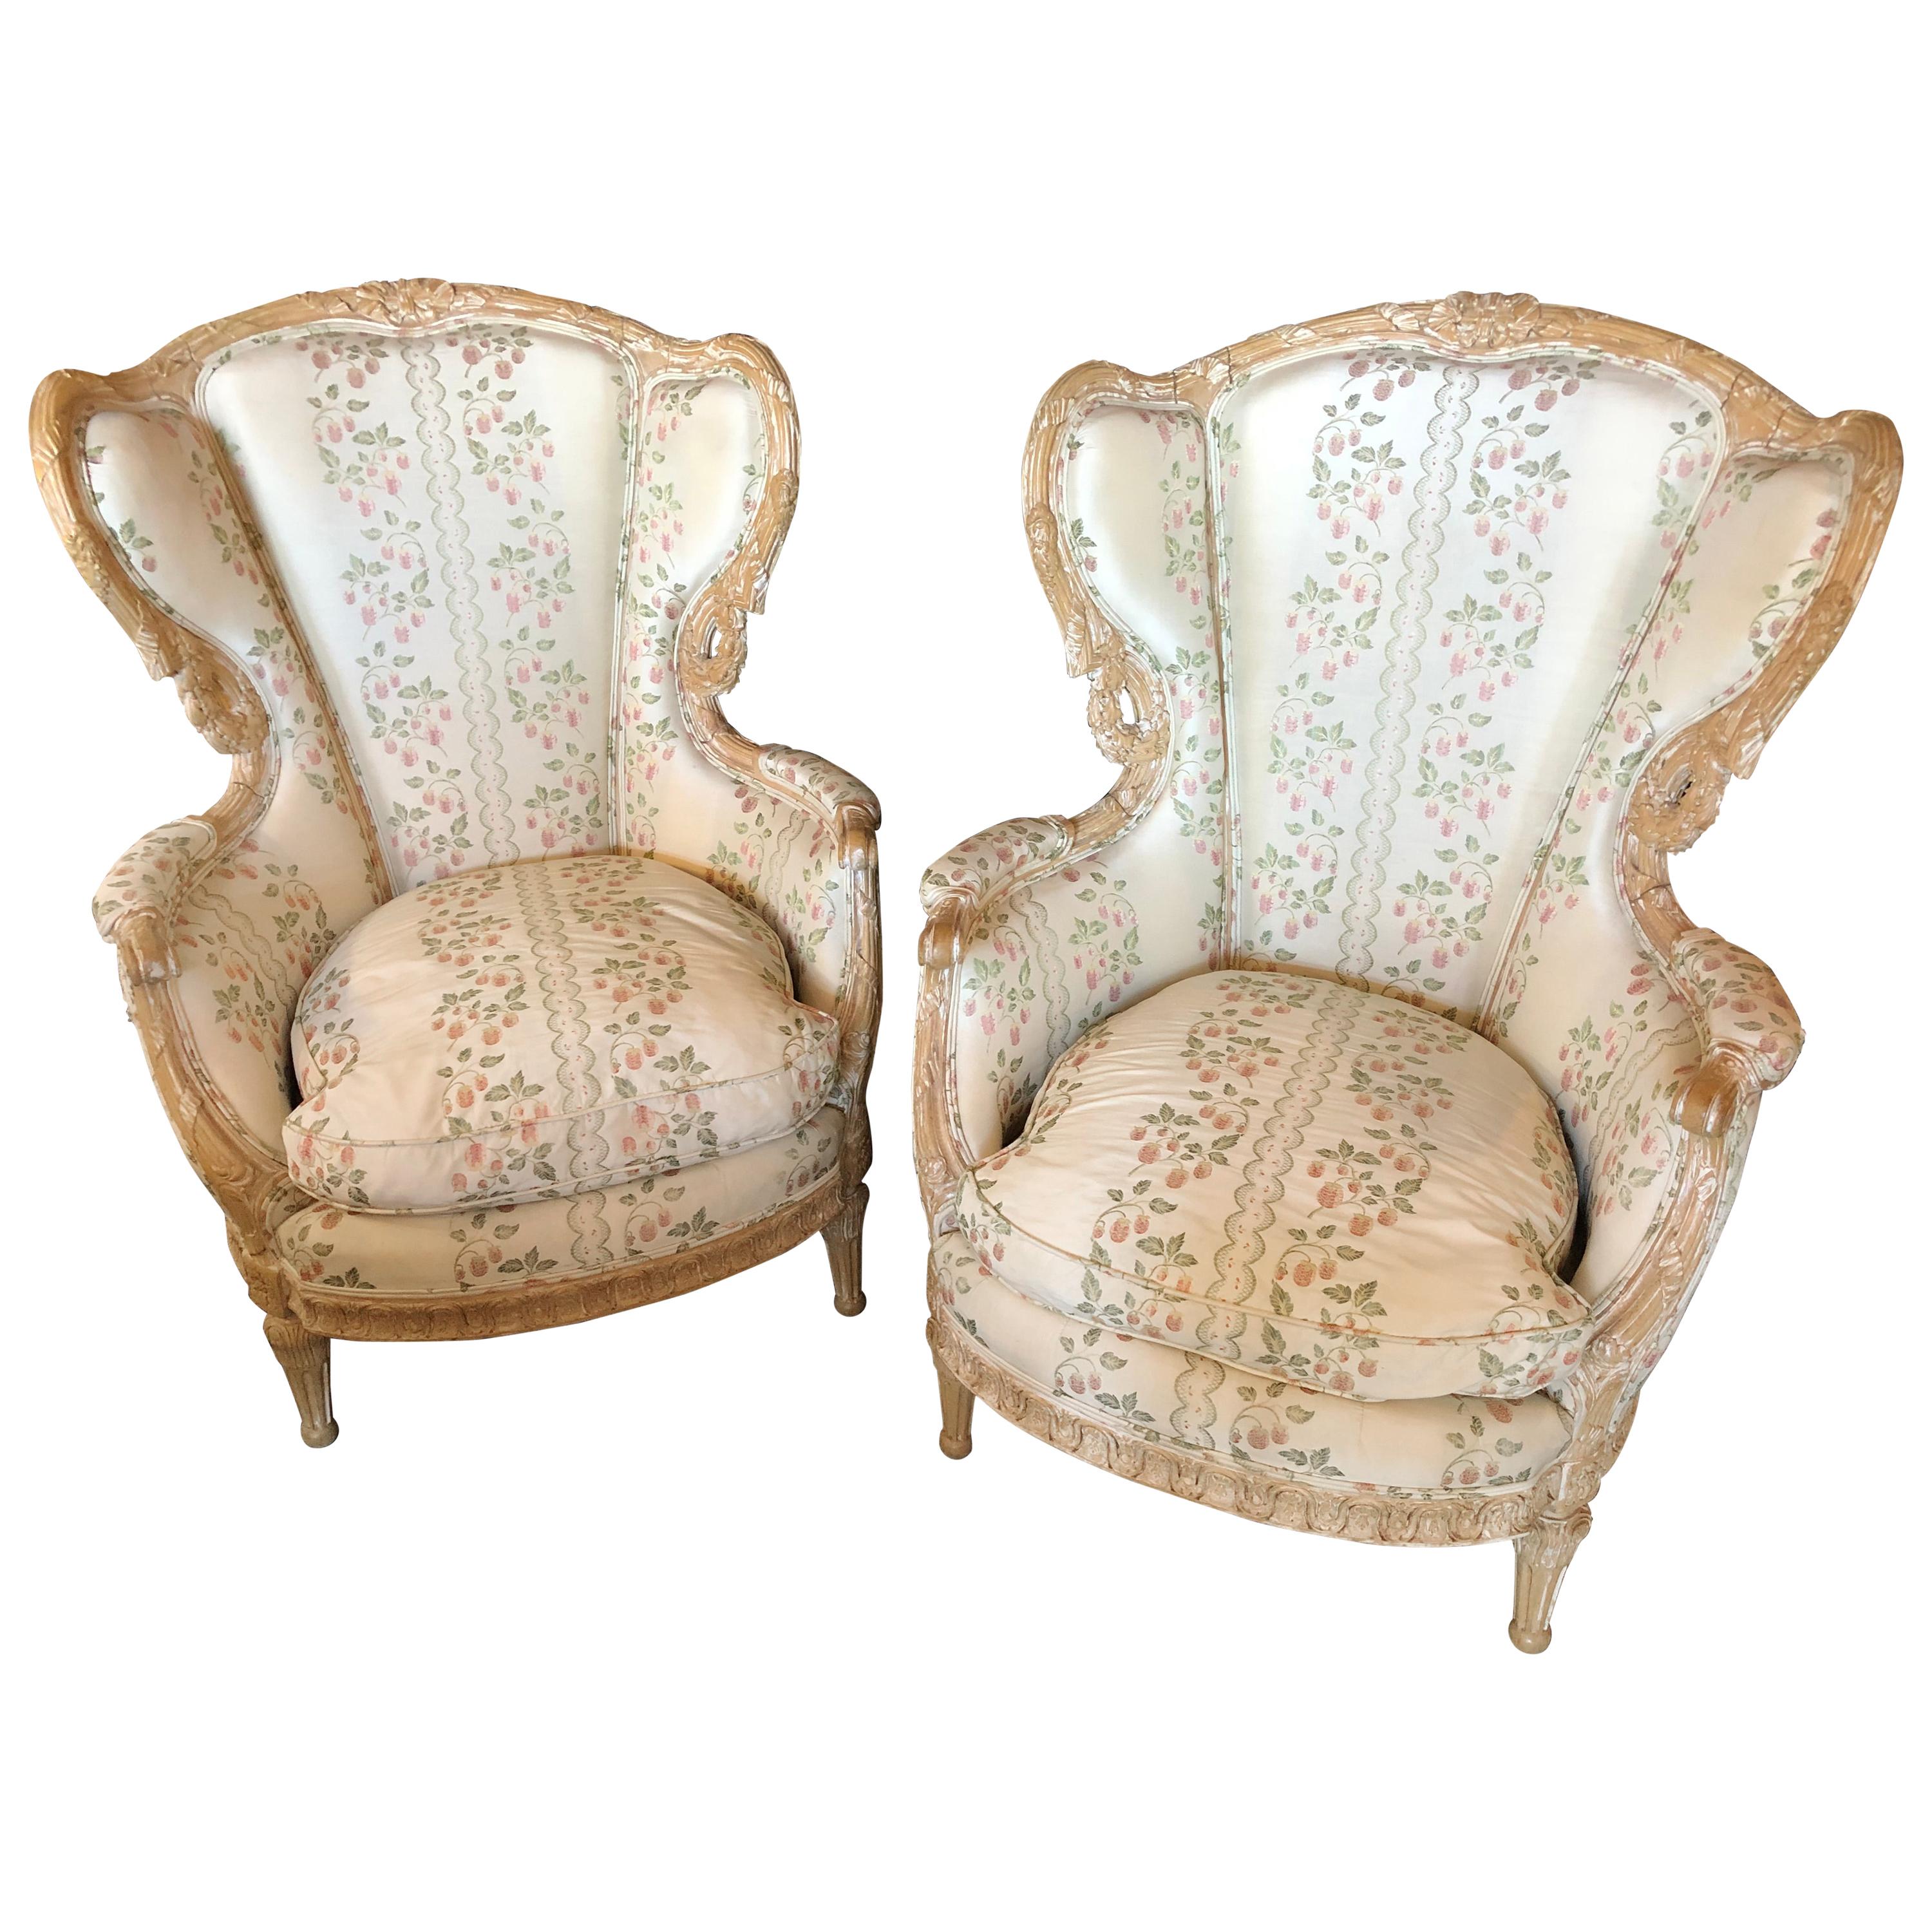 Zwei große beeindruckende geschnitzte Sessel mit hoher Rückenlehne im Used-Stil mit gerahmter Flügellehne